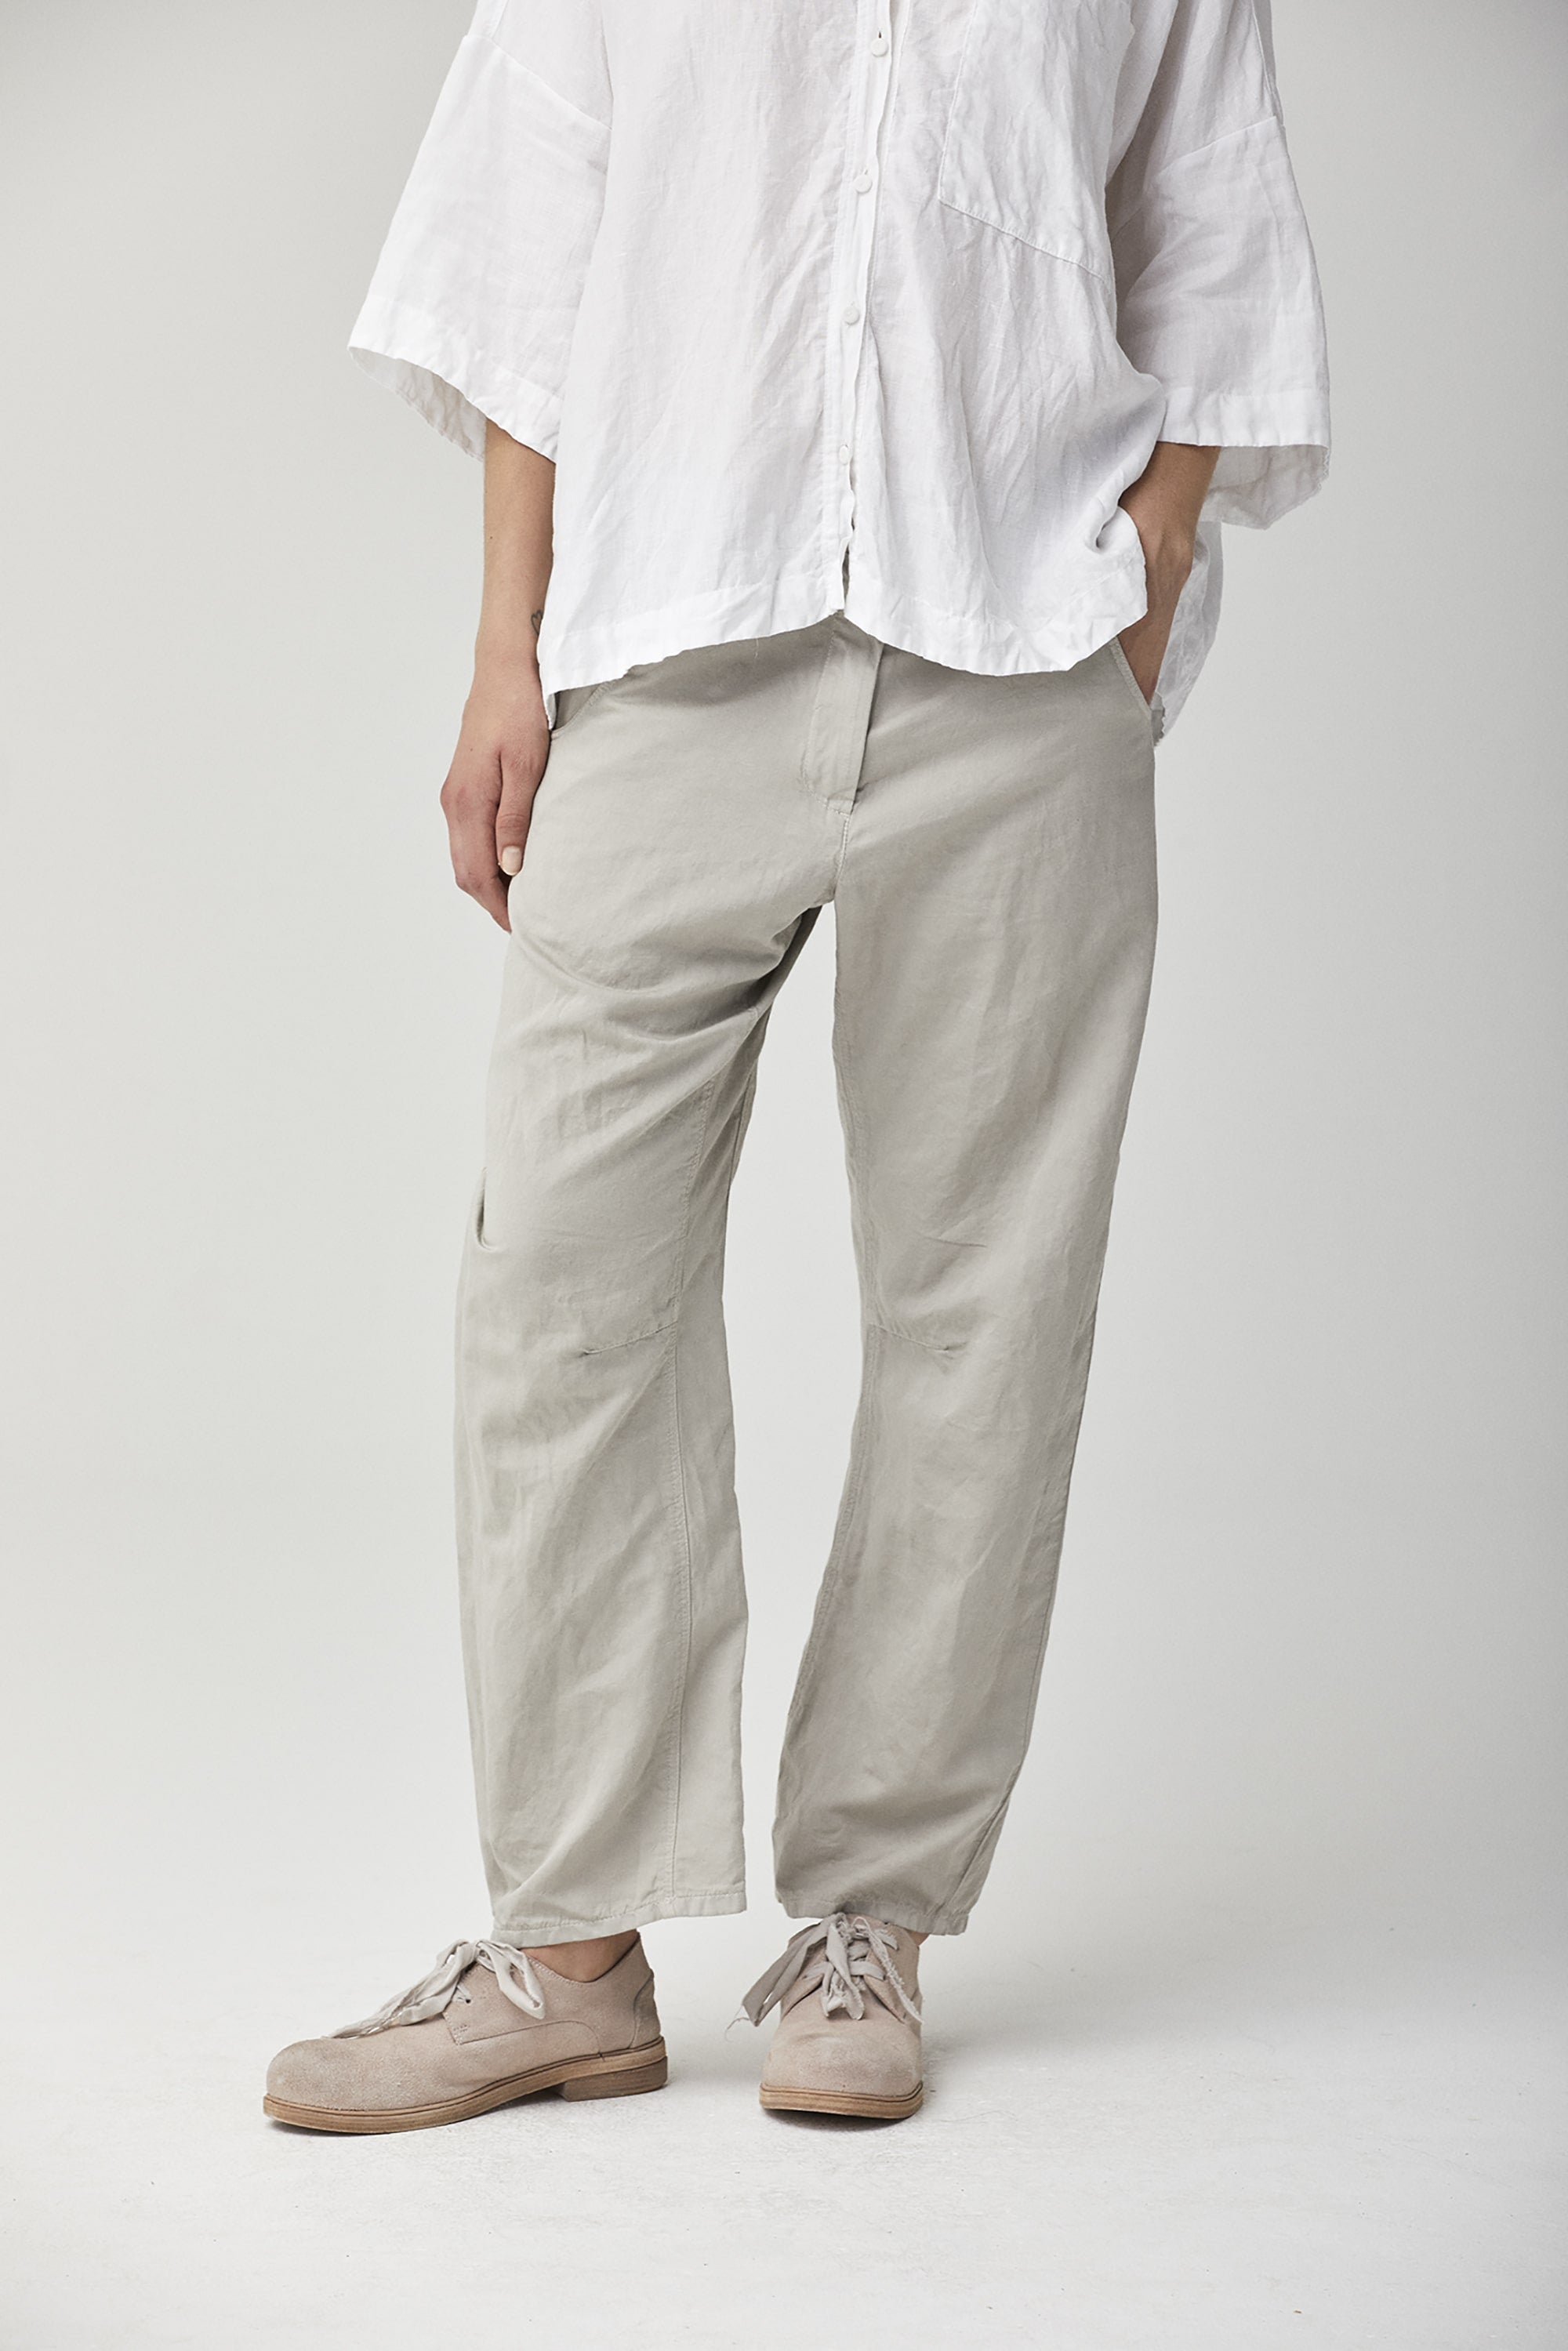 Cotton Linen Curved Pants